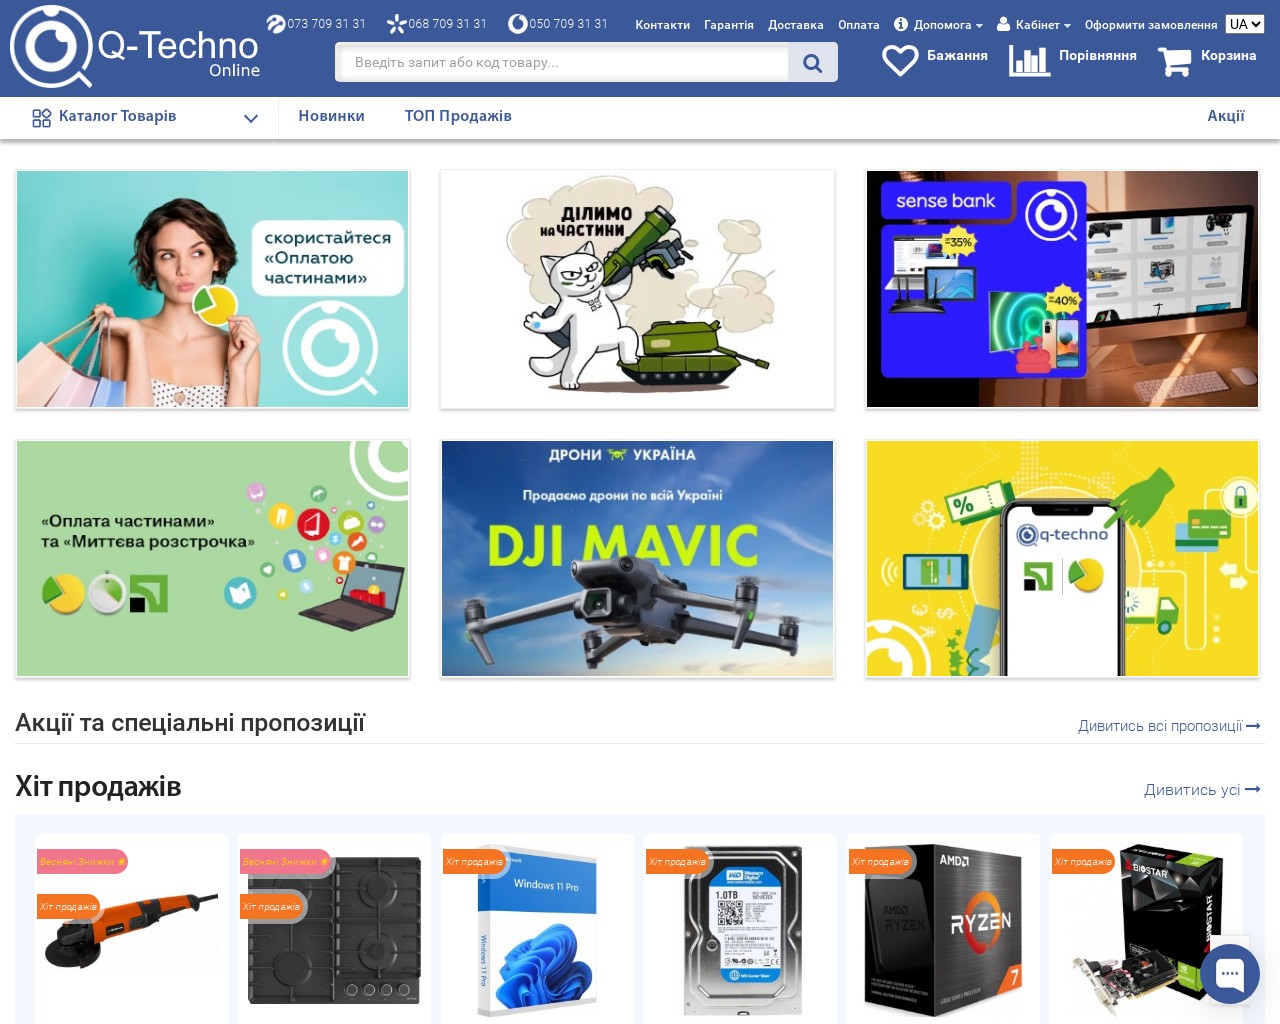 Изображение скриншота сайта - Интернет магазин бытовой техники и електроники Q-Techno